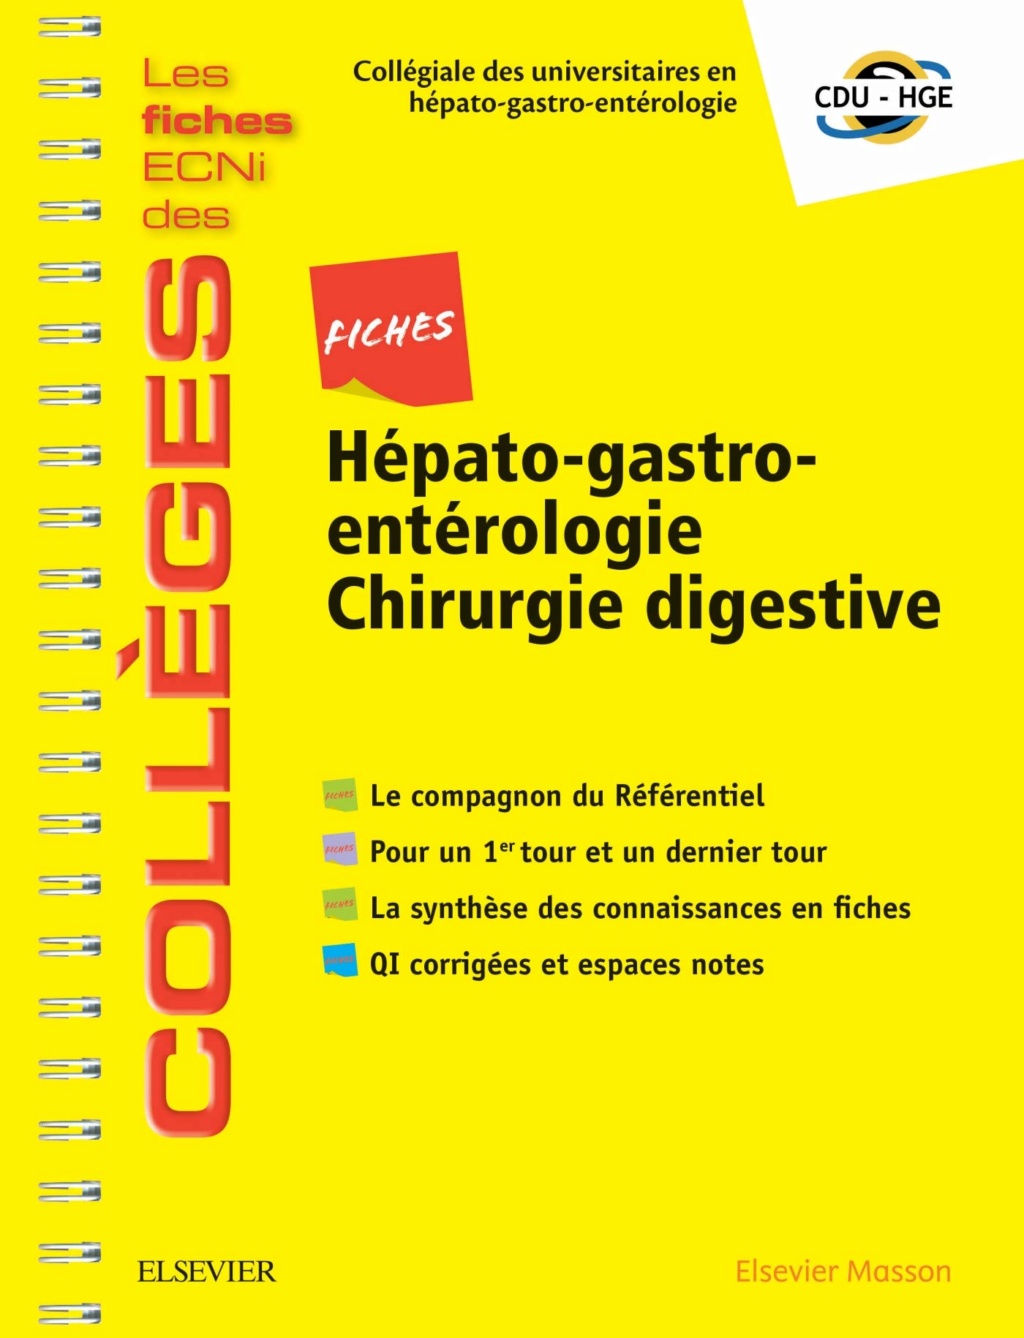 Livres Médicales - Fiches Hépato-gastro-entérologie Chirurgie digestive: Les fiches ECNi et QI des Collèges 2019 - Page 3 Fiches11